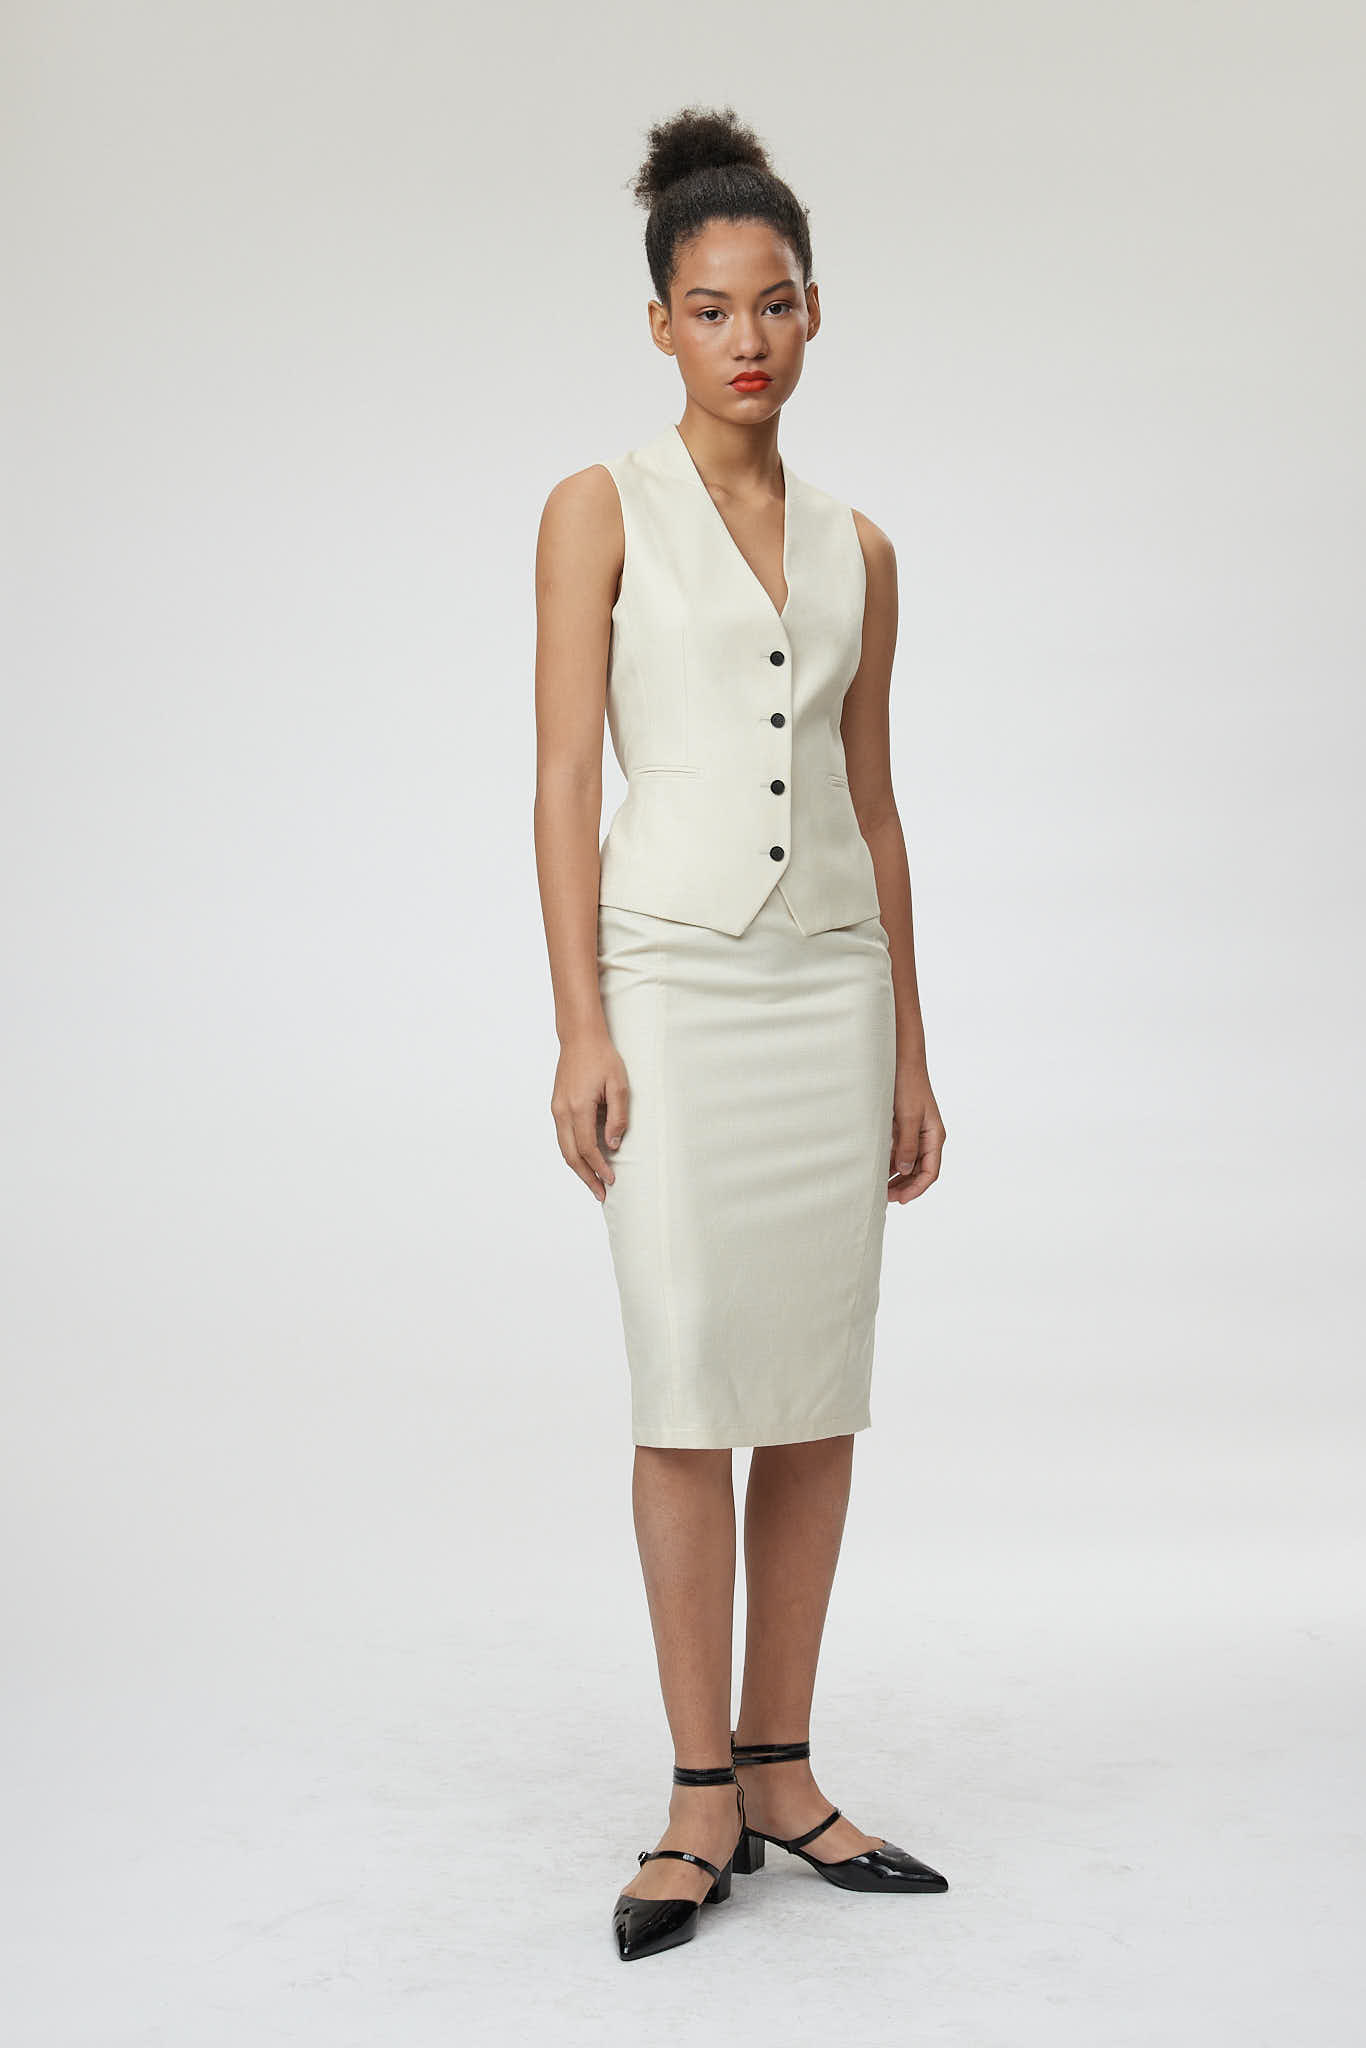 Ferrara Waistcoat – Classic waistcoat in off-white0